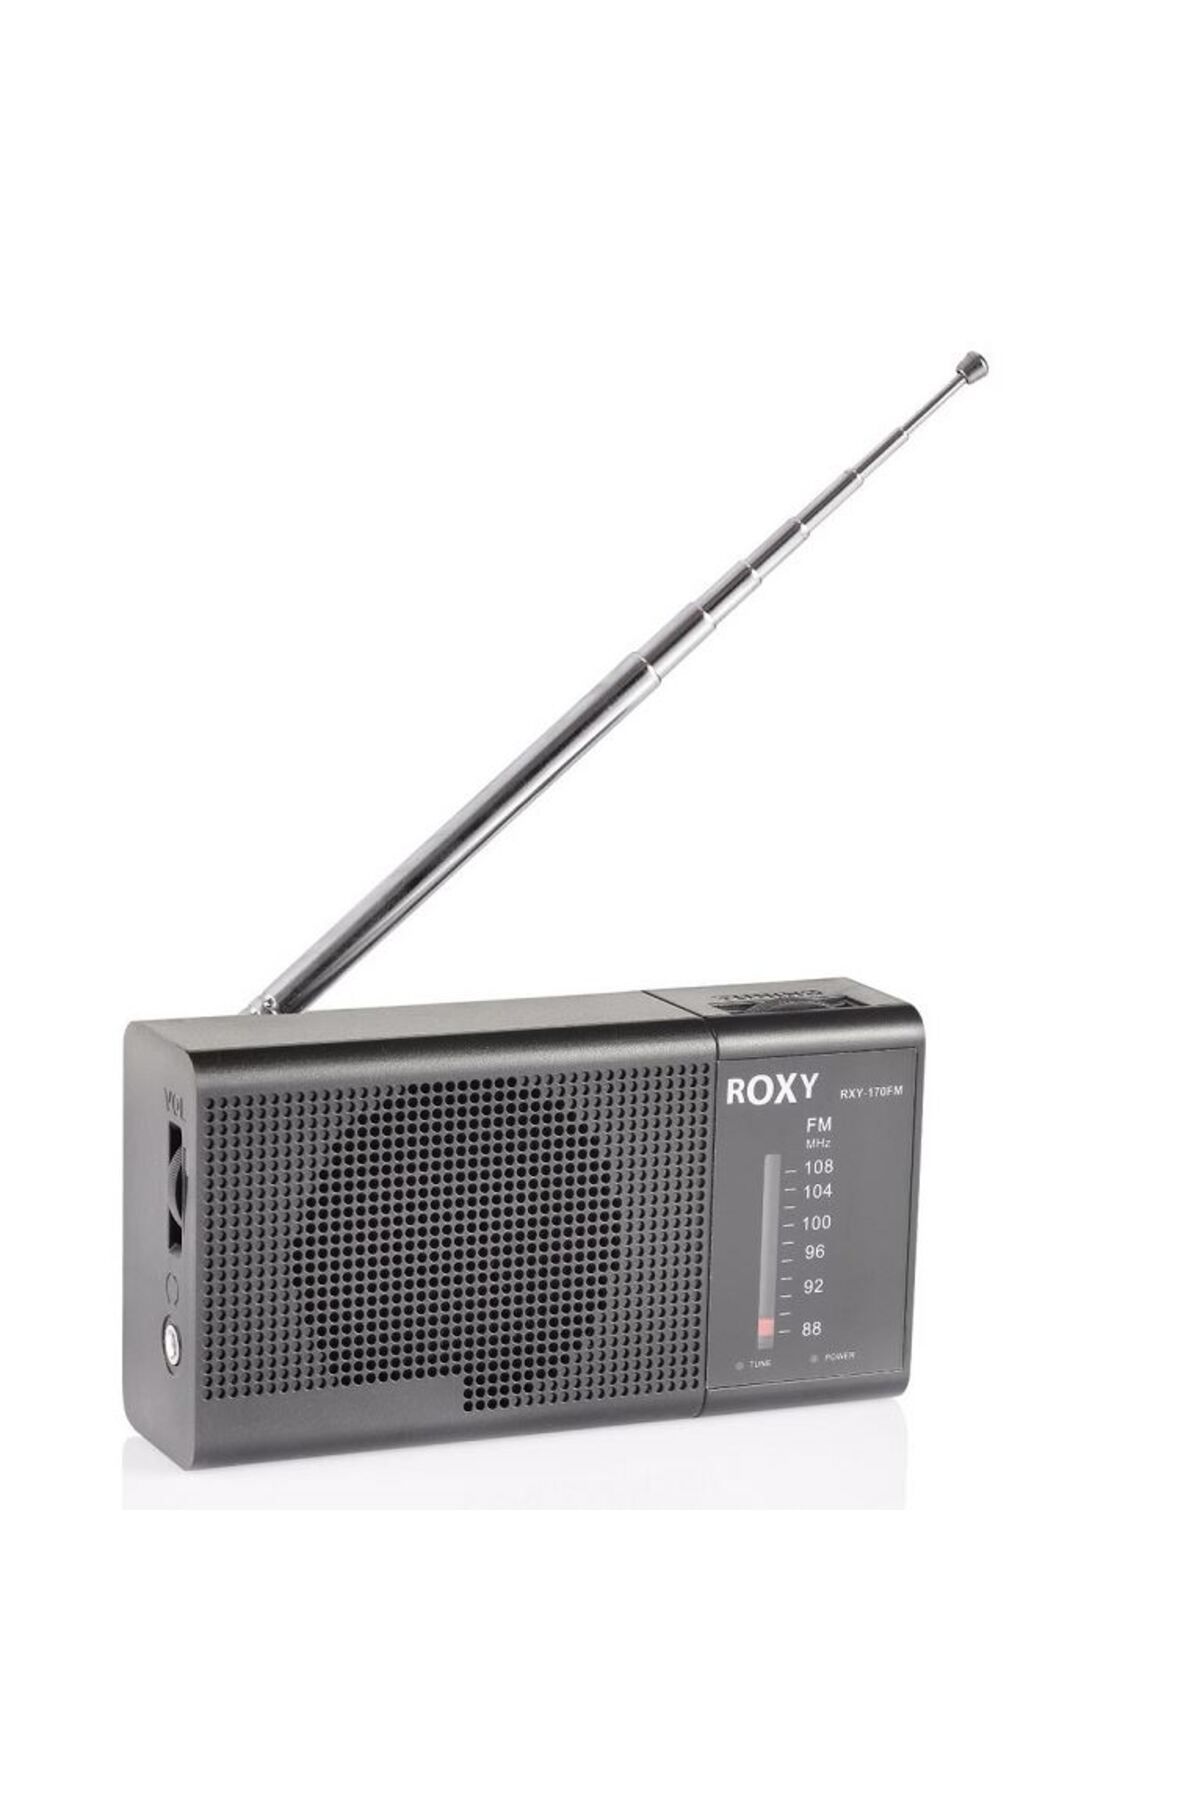 Roxy RXY-170FM CEP TİPİ MİNİ ANALOG RADYO